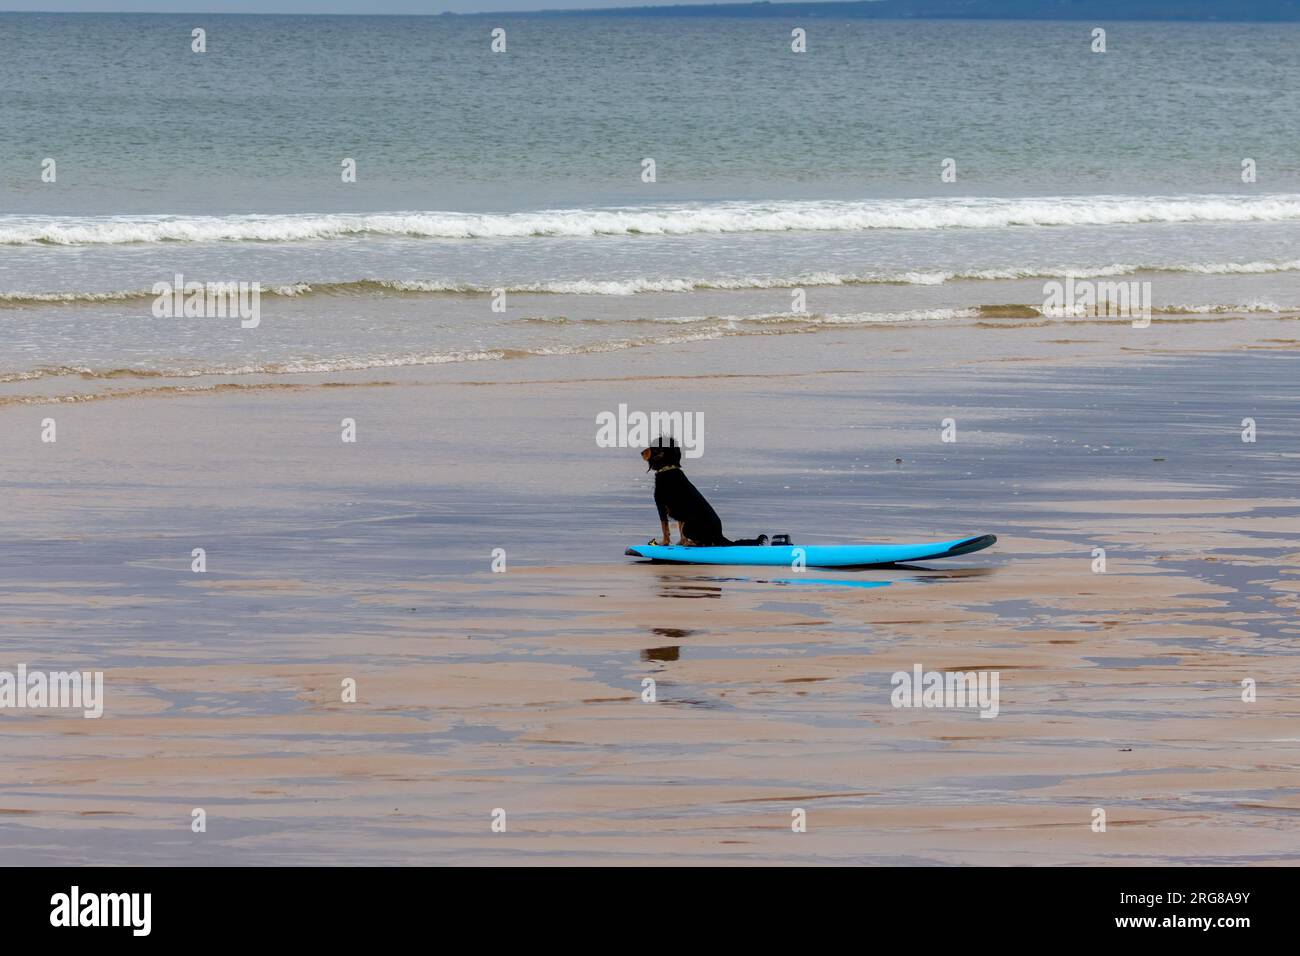 Epaniel noir et tan assis sur une planche de surf turquoise au bord de la mer Banque D'Images